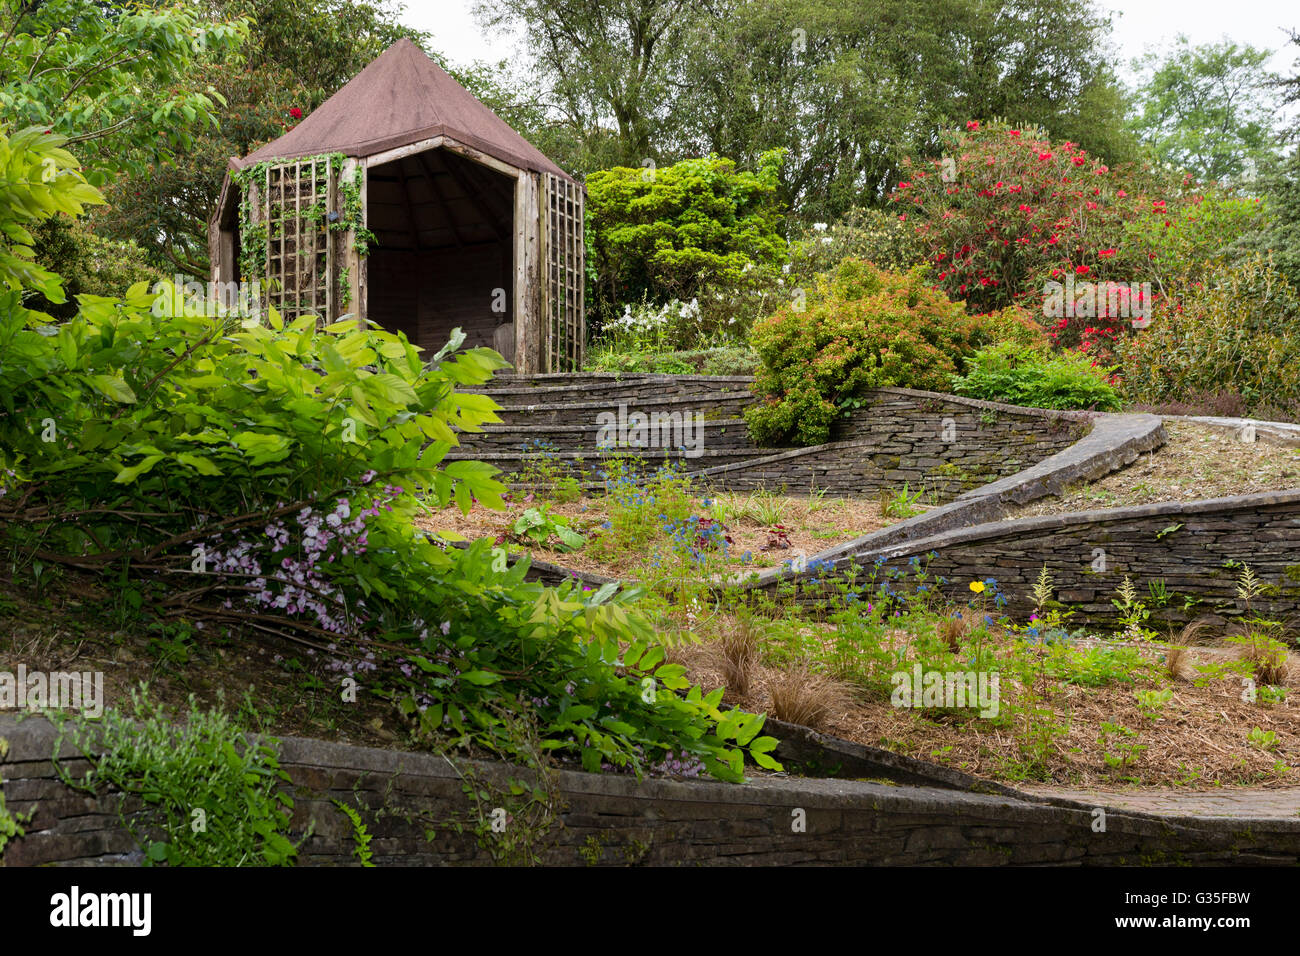 La maison du jardin, Devon, UK, les Ovales jardin Terrasses ornamentally une pente à l'aide d'étapes et de pierres sèches. Banque D'Images